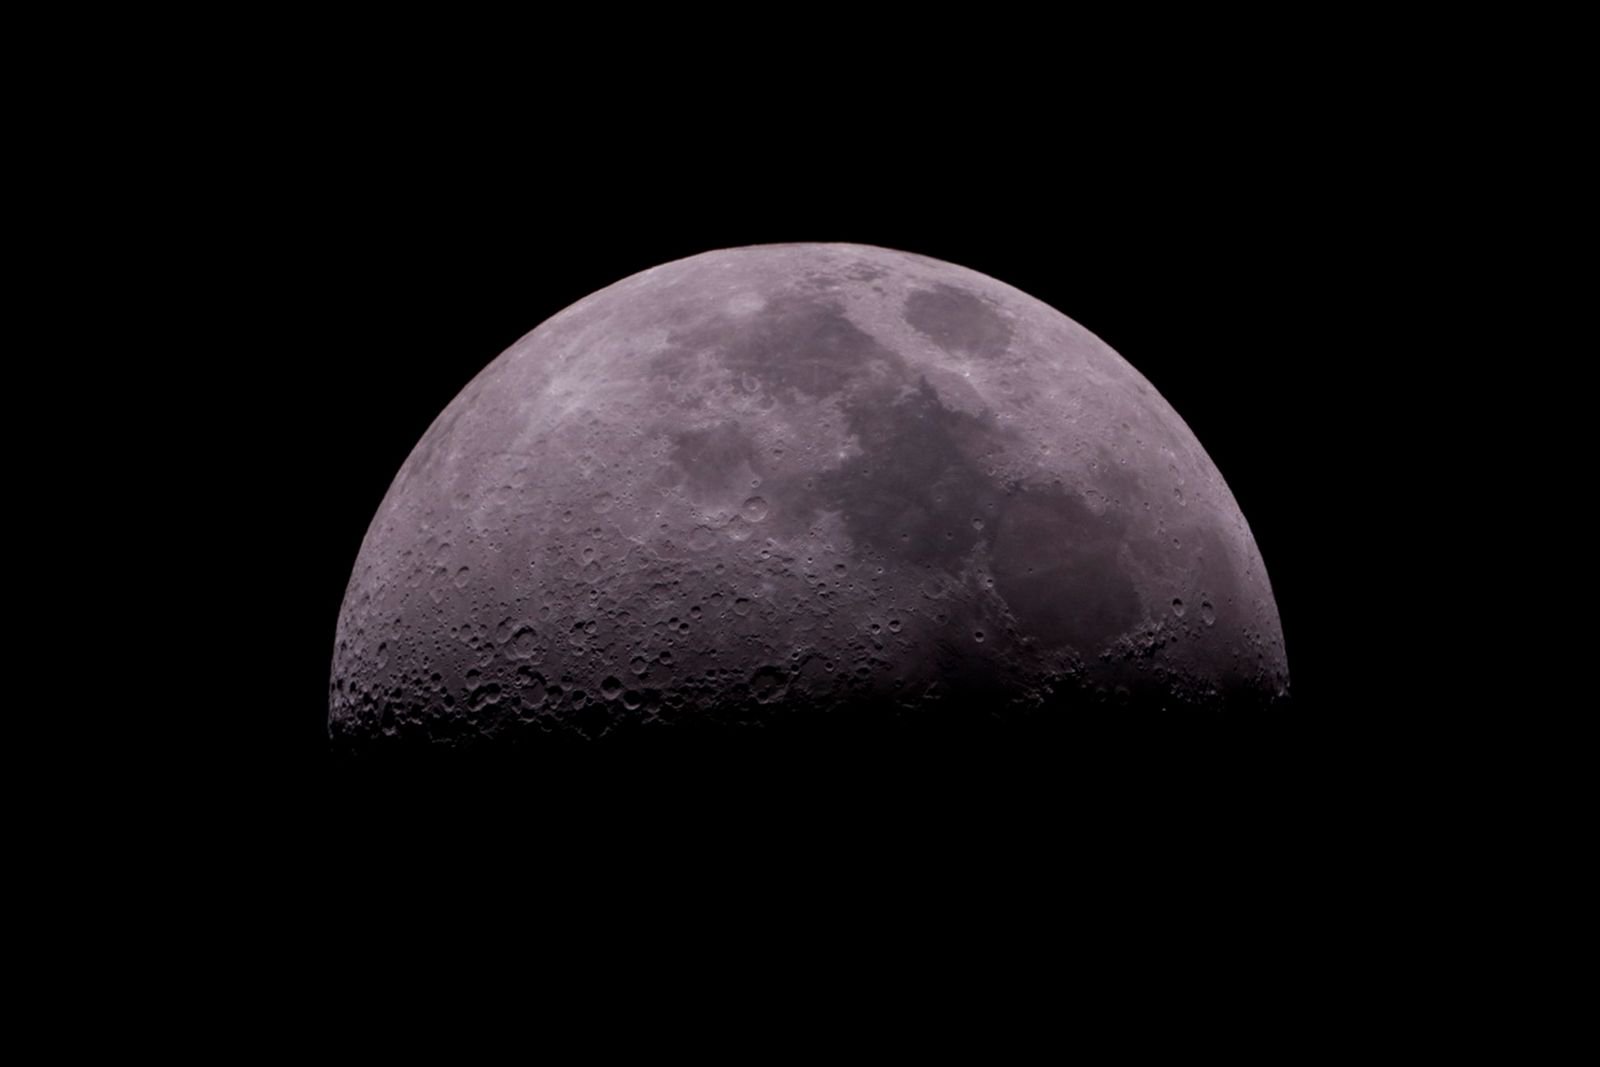 เลือกจุดโฟกัสอย่างไร เมื่อต้องการถ่ายภาพดวงจันทร์ให้ได้ภาพสวย